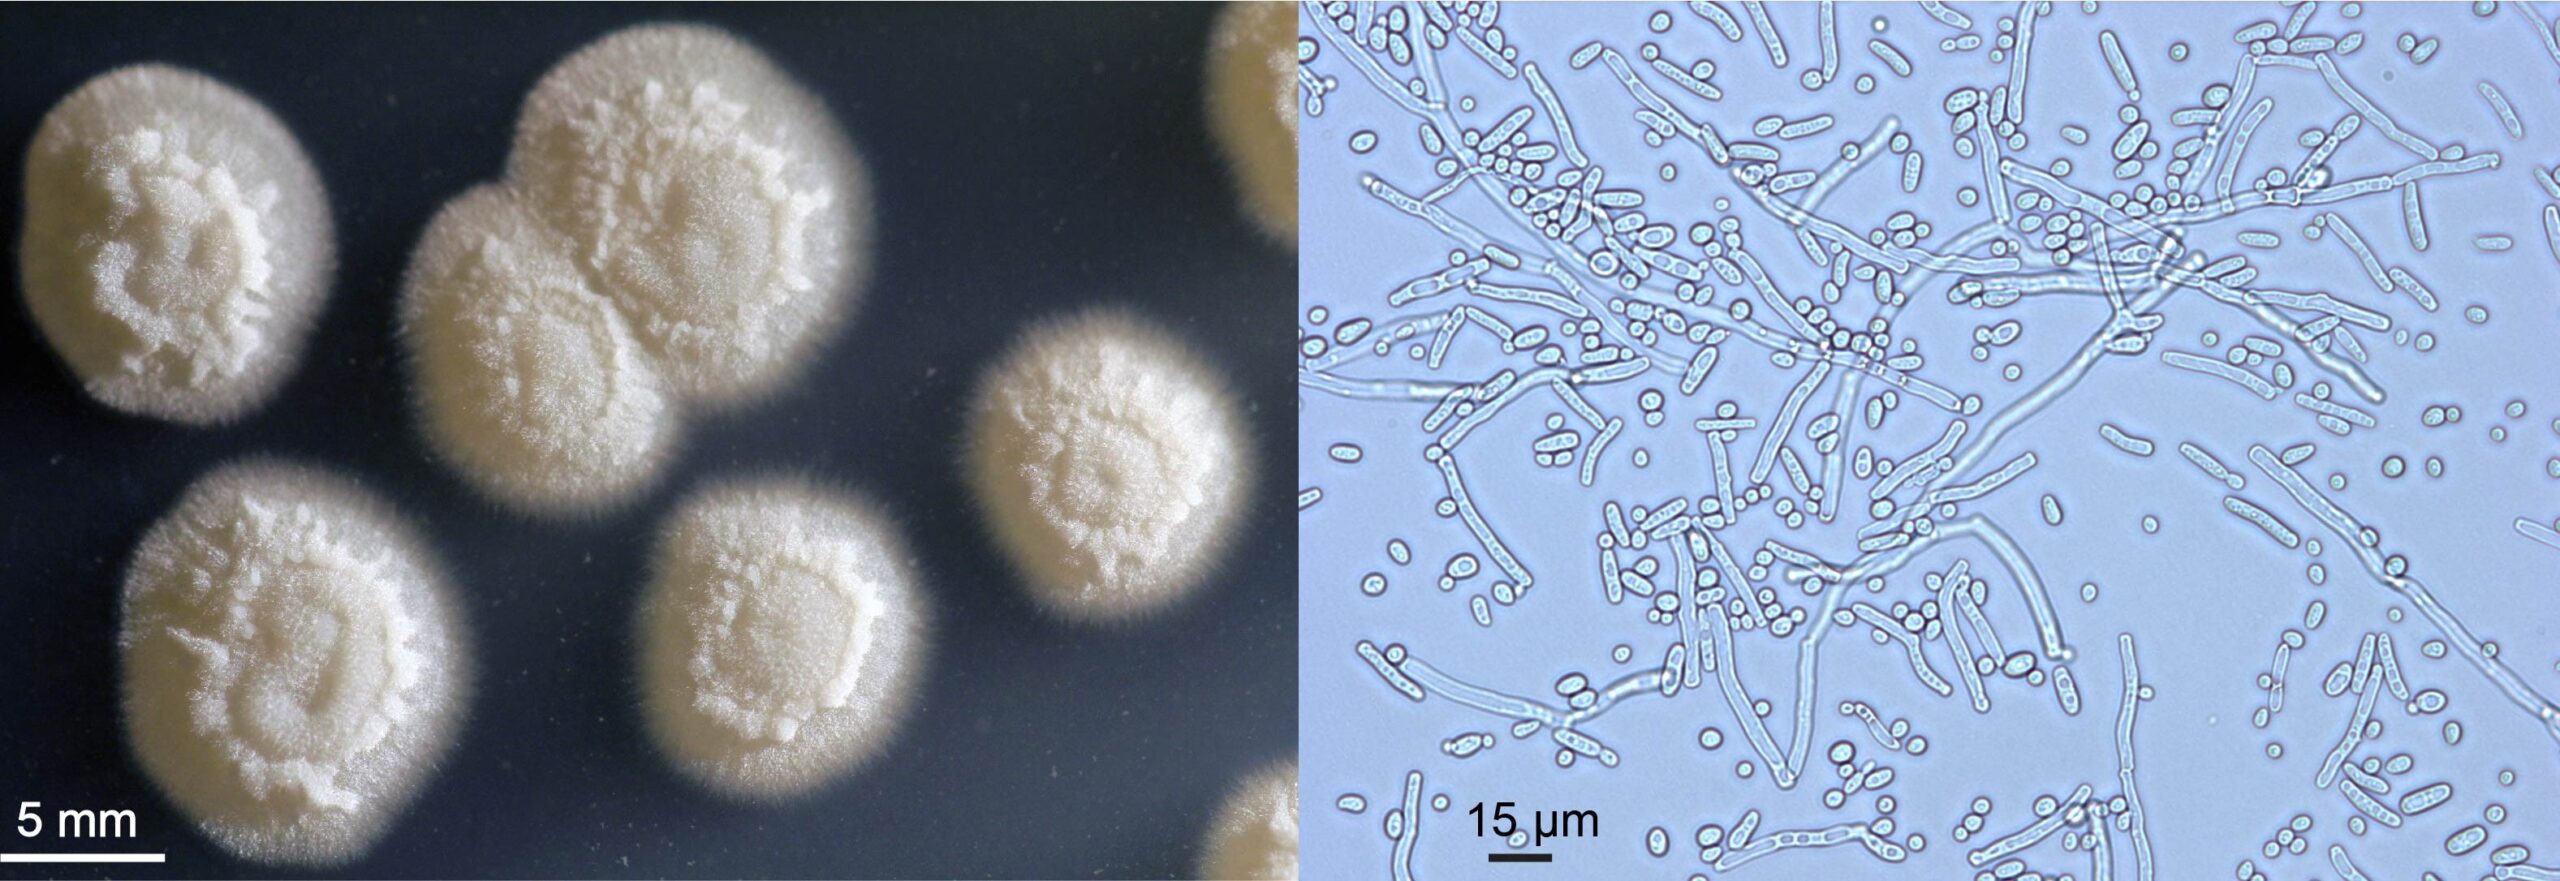 Figura 2 – A sinistra, colonie su terreno solido del lievito oleaginoso Yarrowia lipolytica; a destra, fotografia al microscopio ottico di cellule dello stesso microrganismo